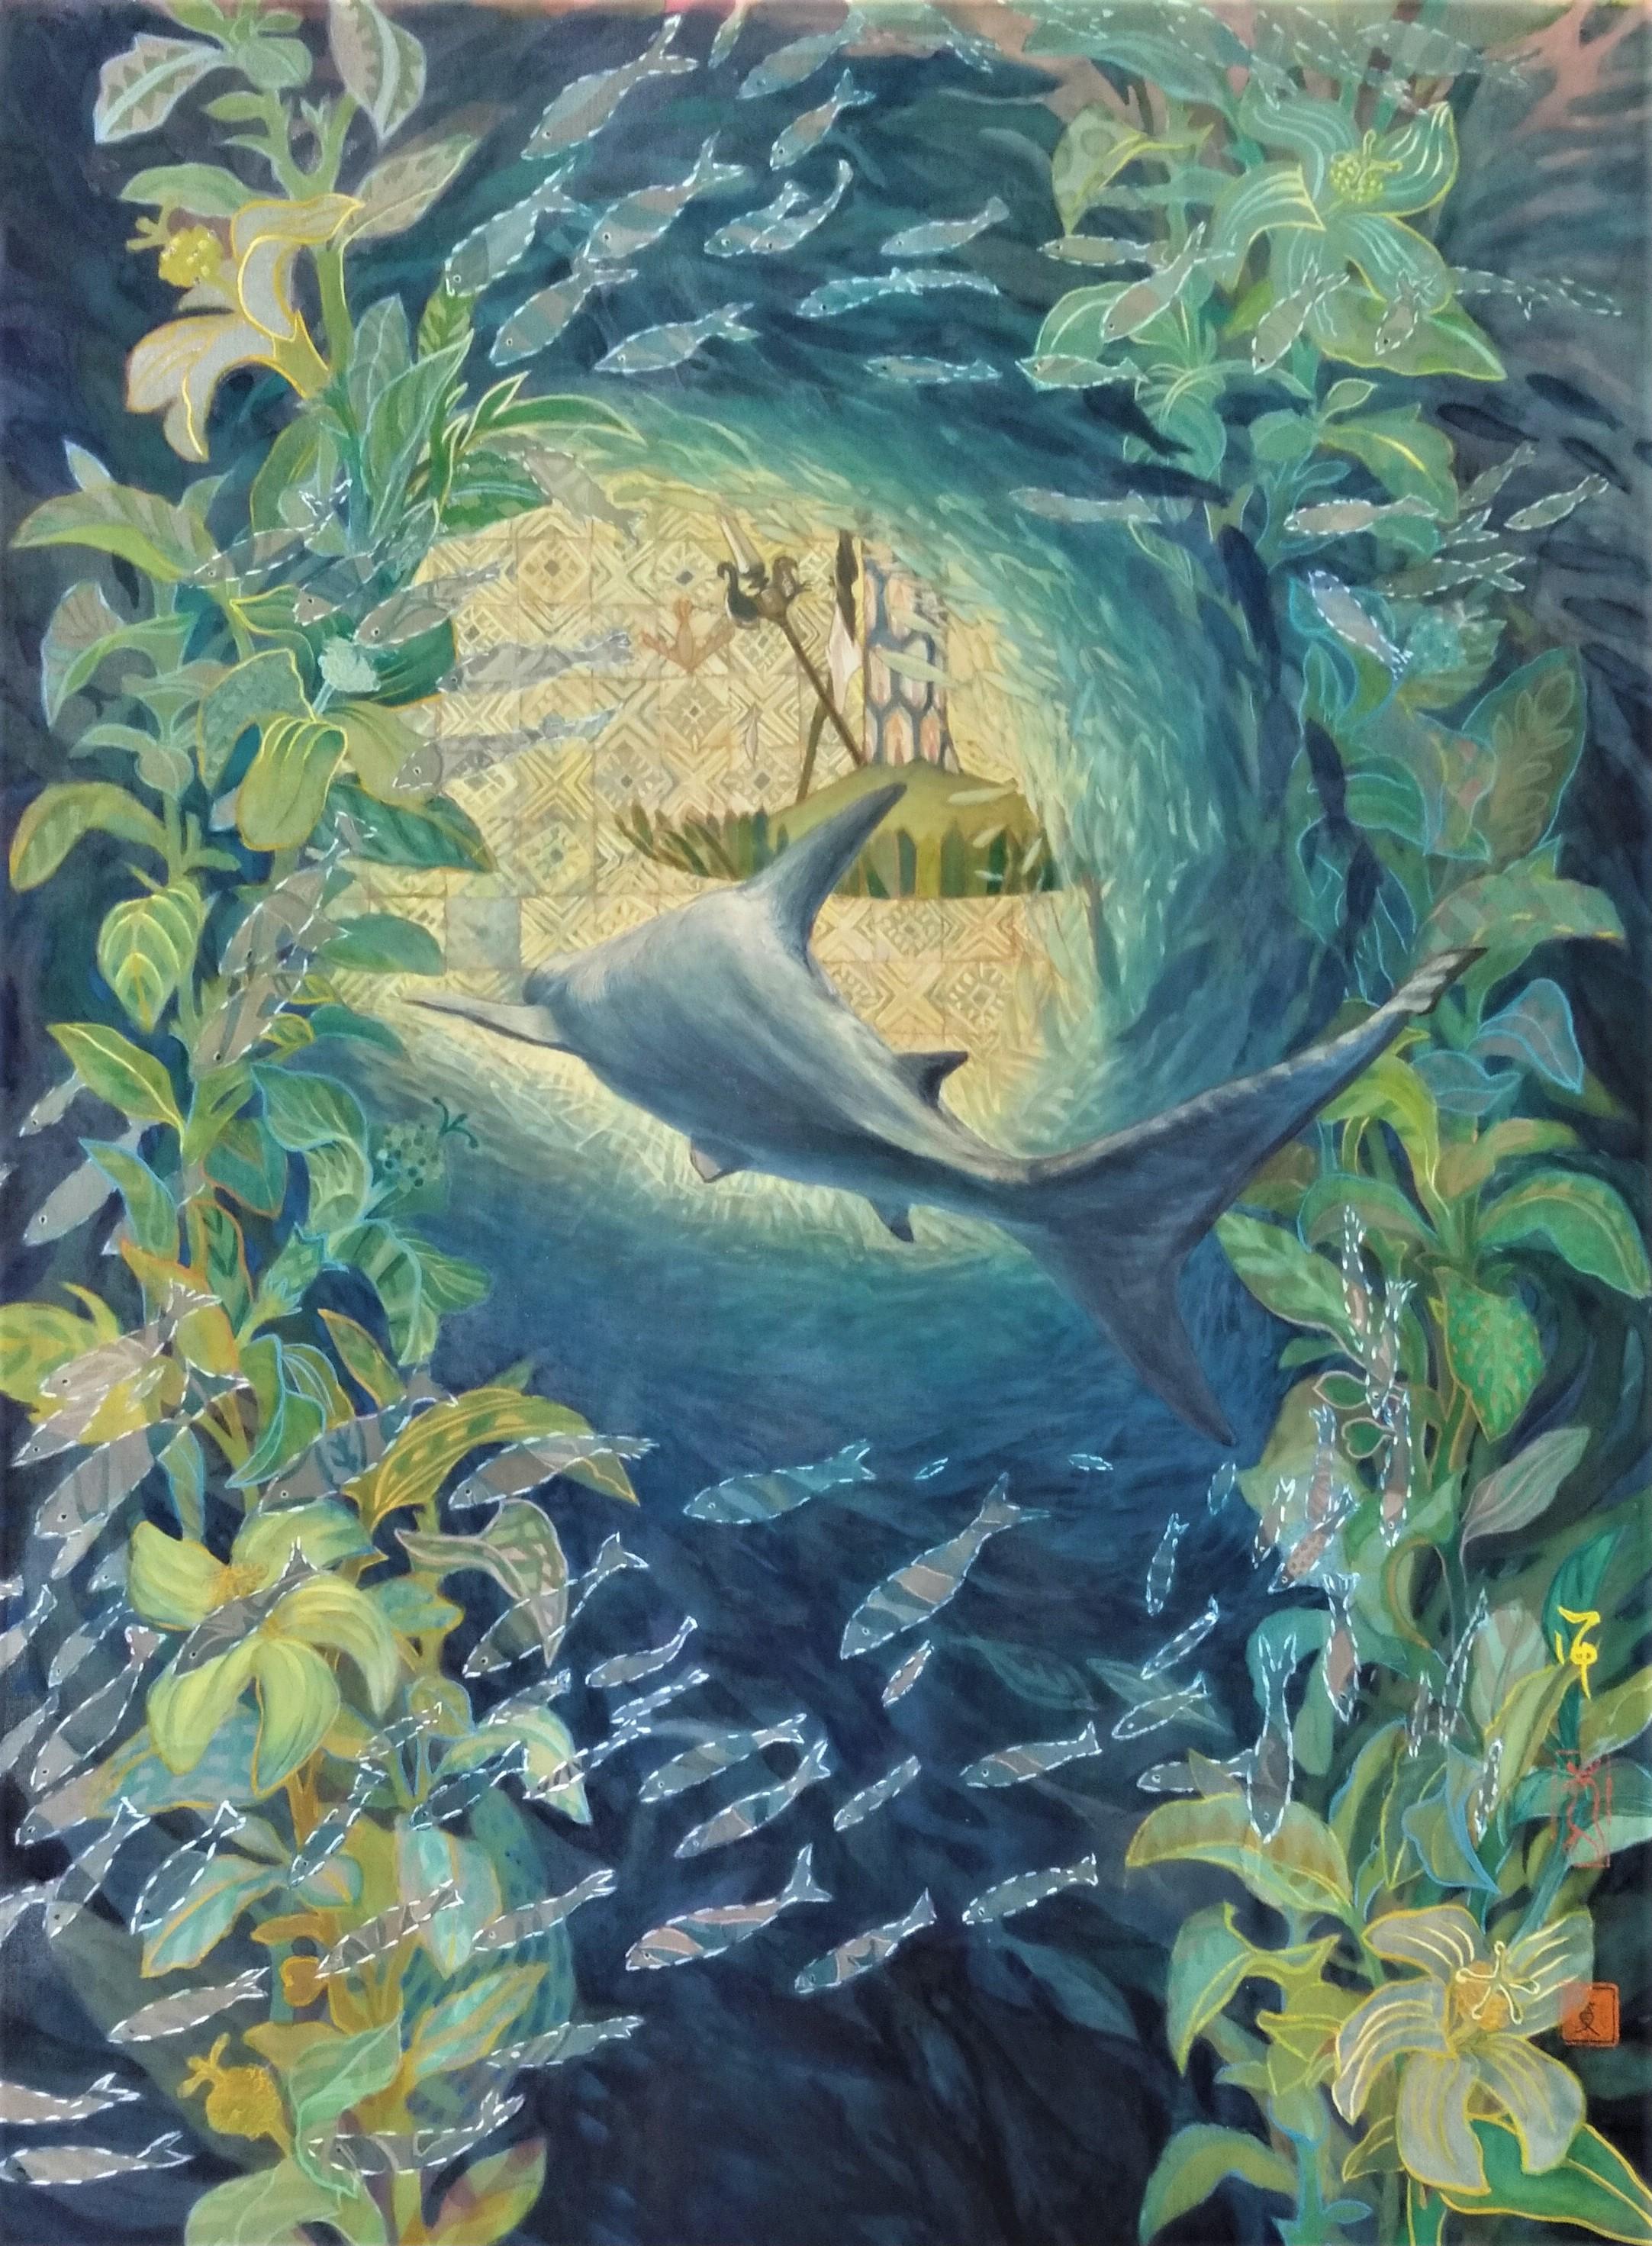 « In a Forest of Fishes », peinture japonaise de paysage marin aux pigments de soie sur la paix de la mer 